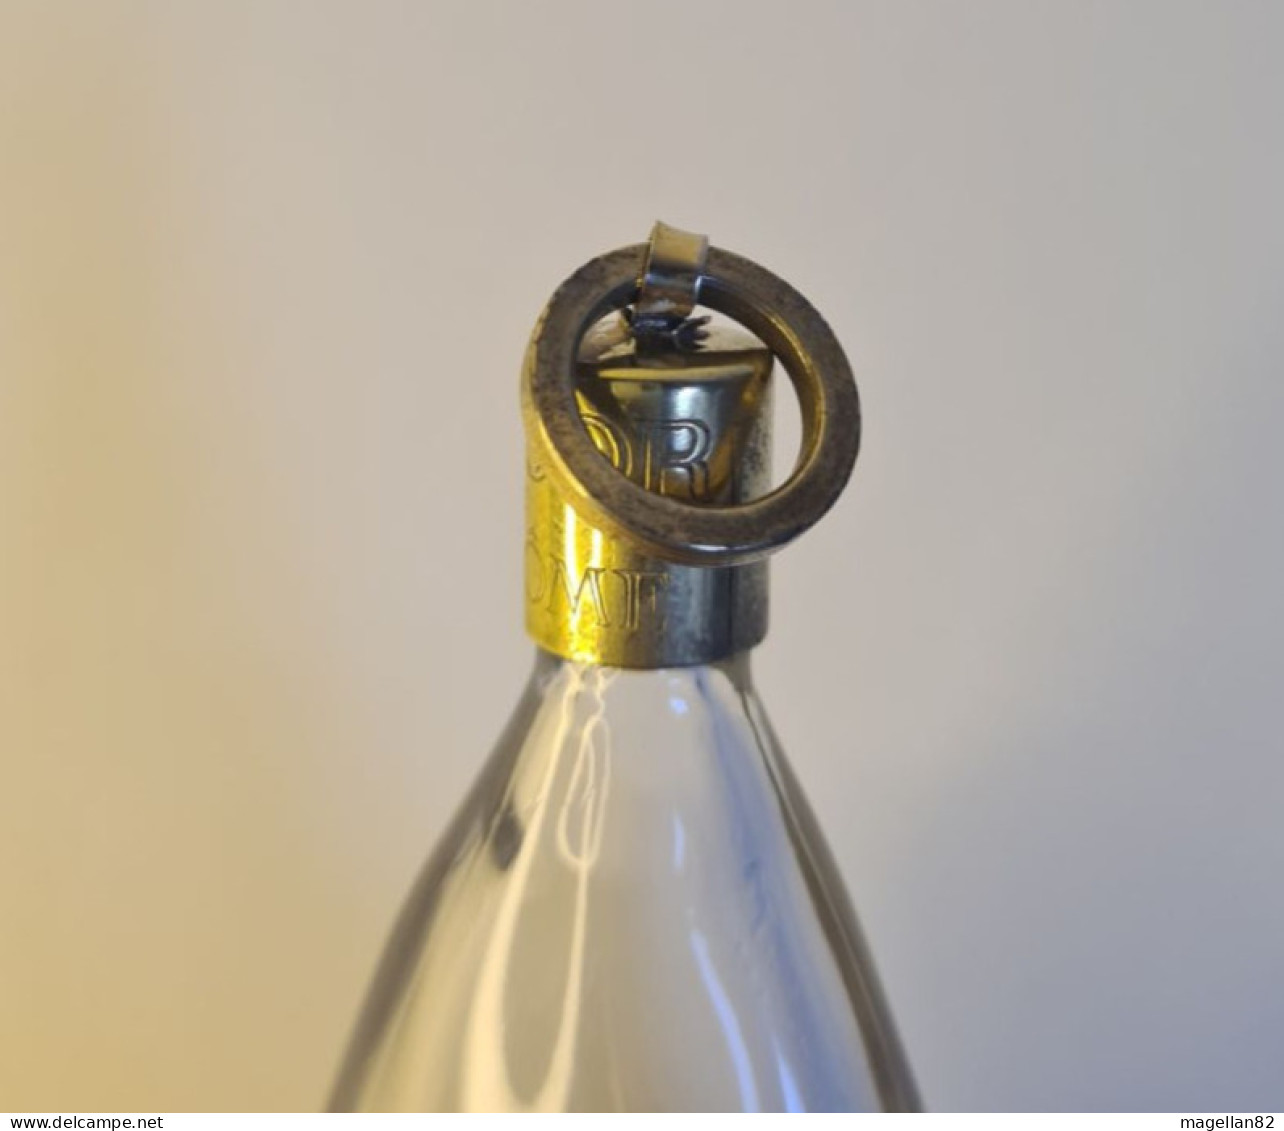 Ancien Flacon Pendentif. Goutte d'eau. Parfum Trésor de lancôme PARIS. Année 1954 Lancome